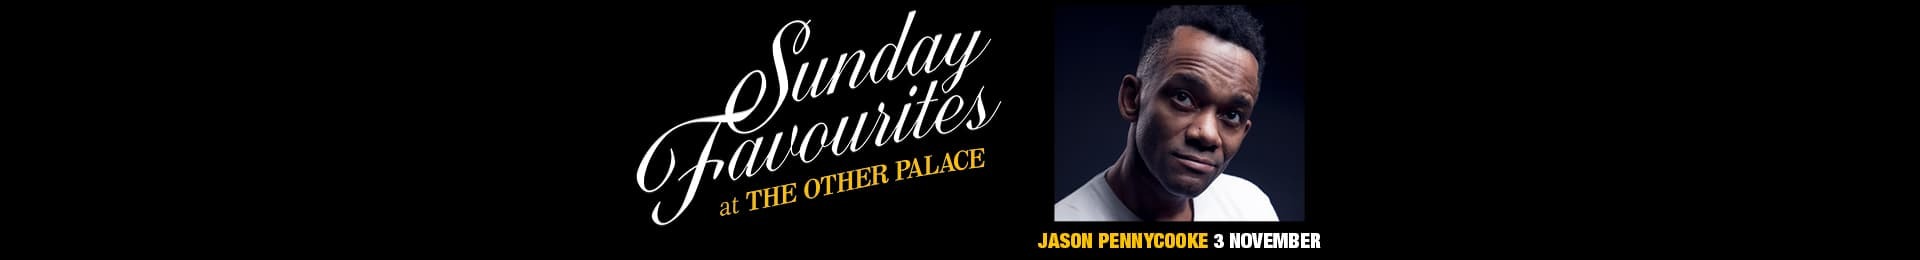 Sunday Favourites: Jason Pennycooke banner image